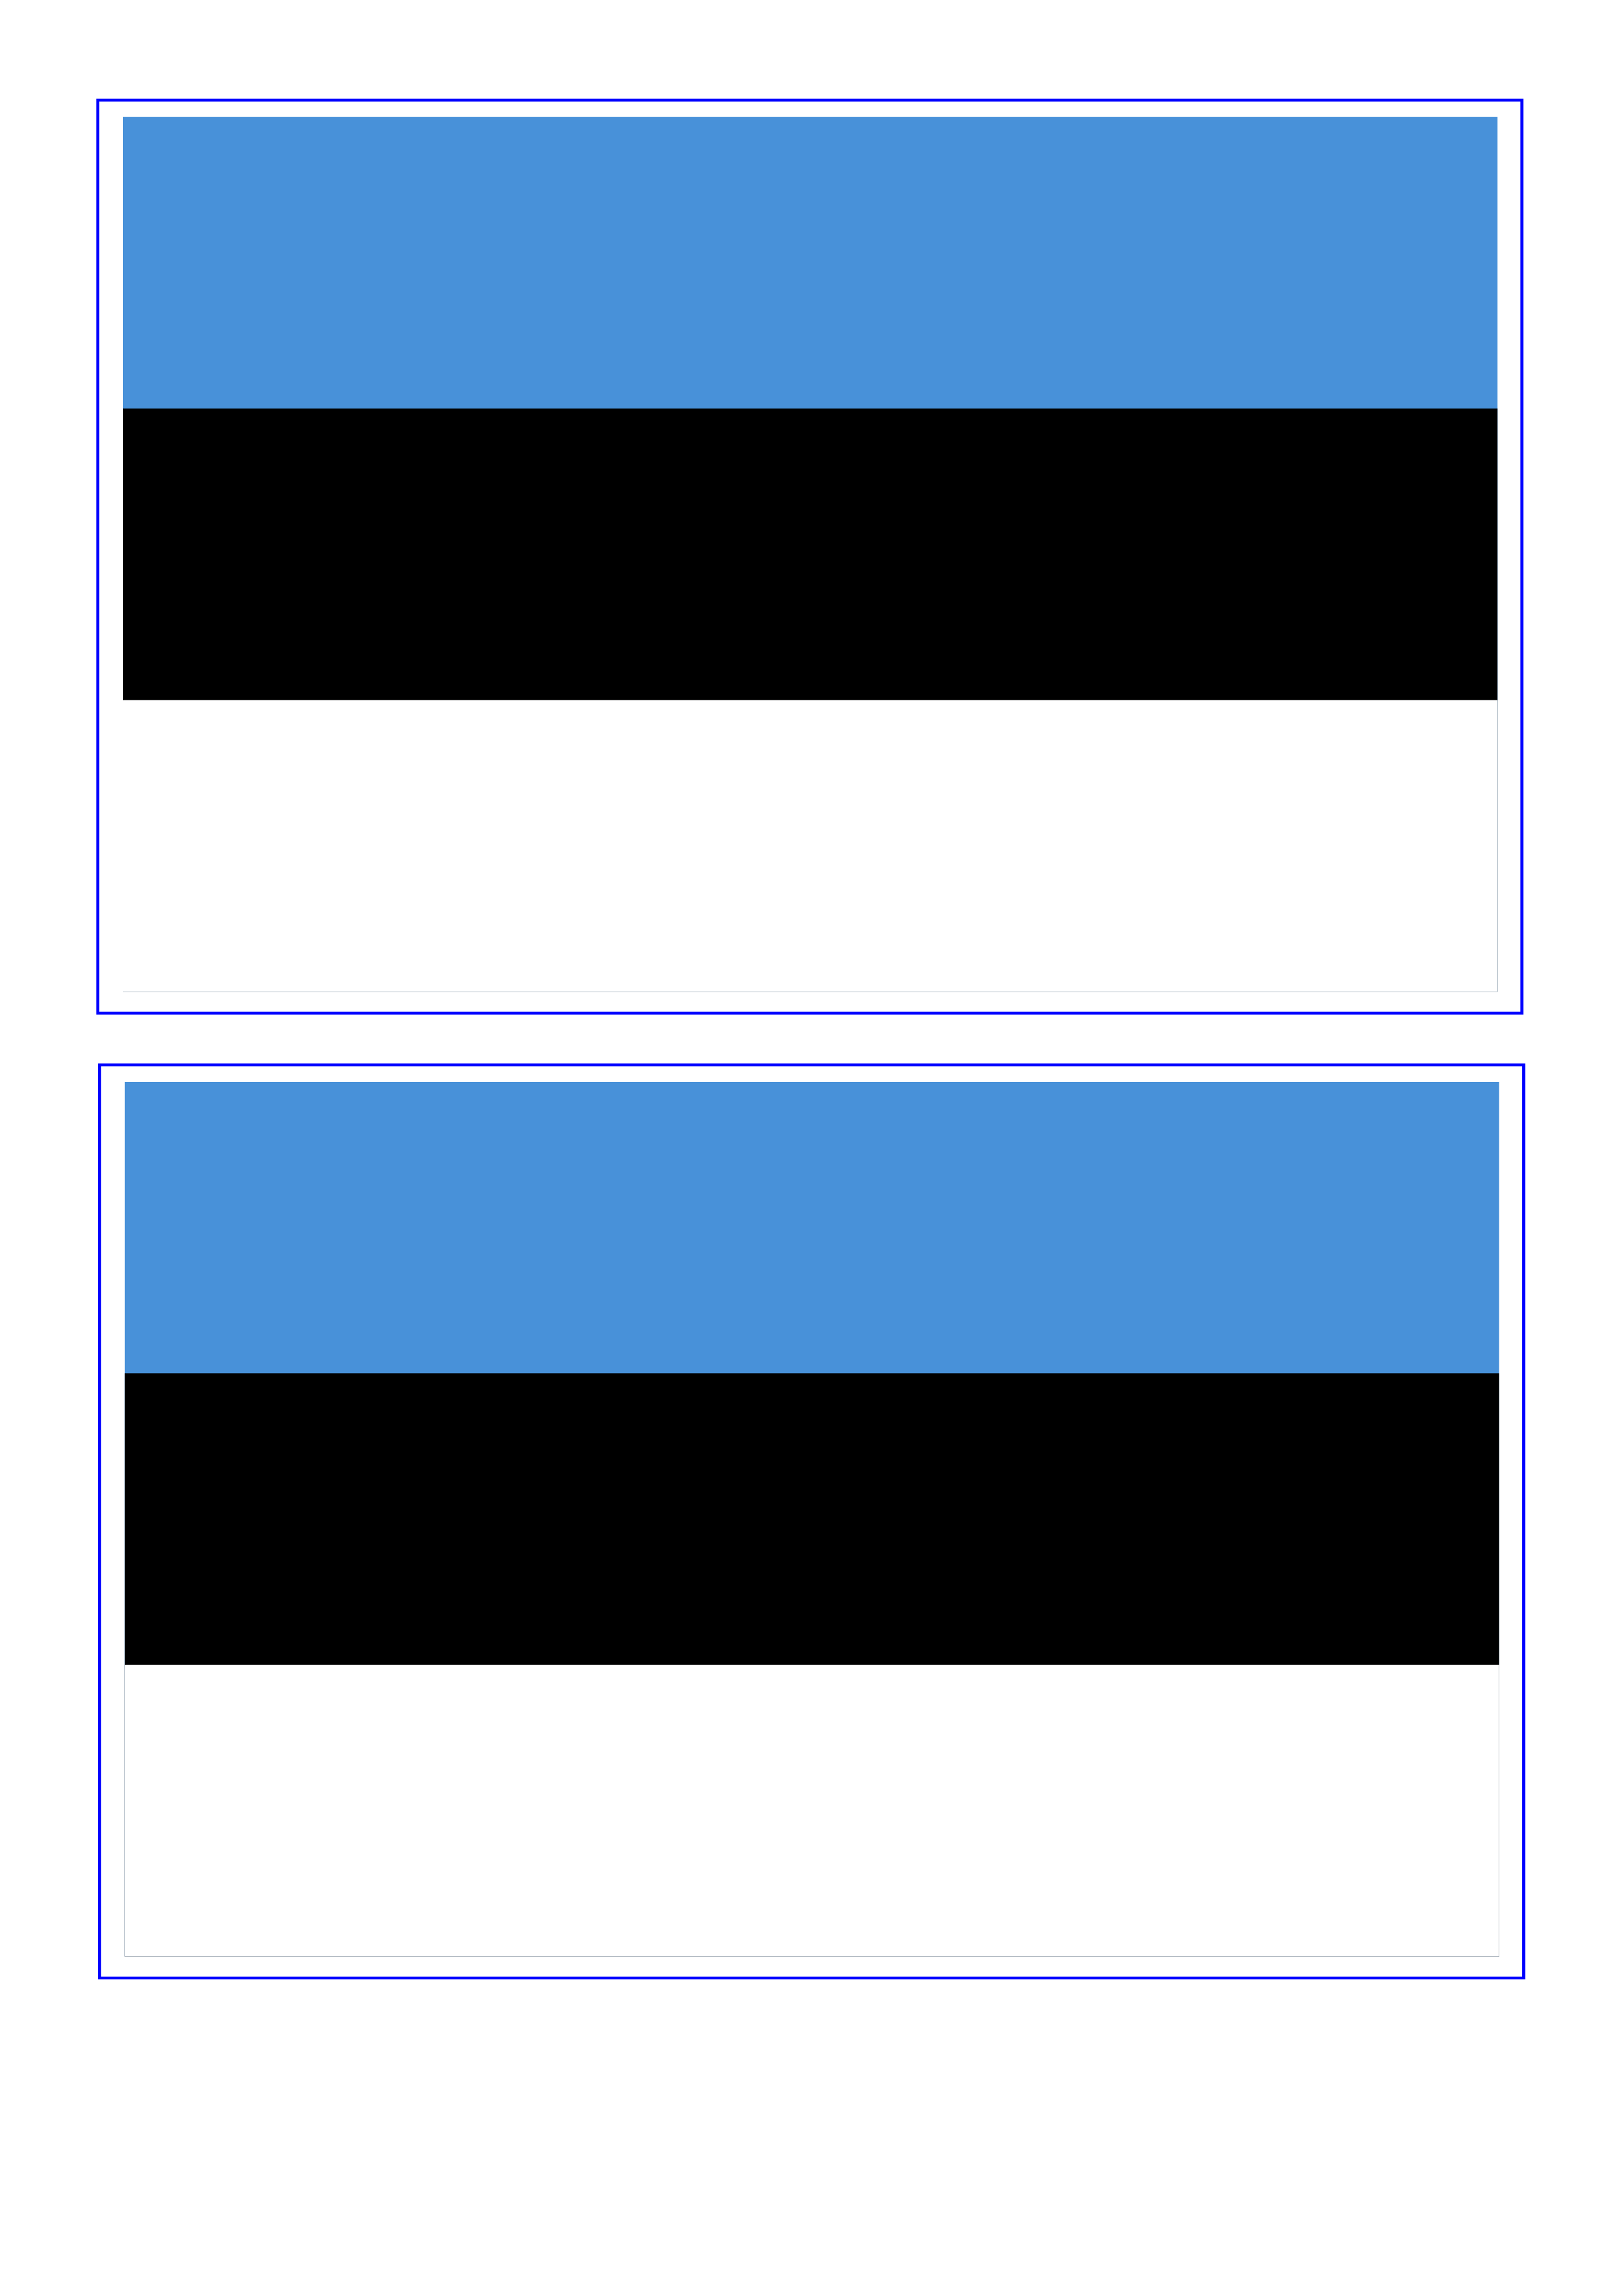 estonia flag plantilla imagen principal